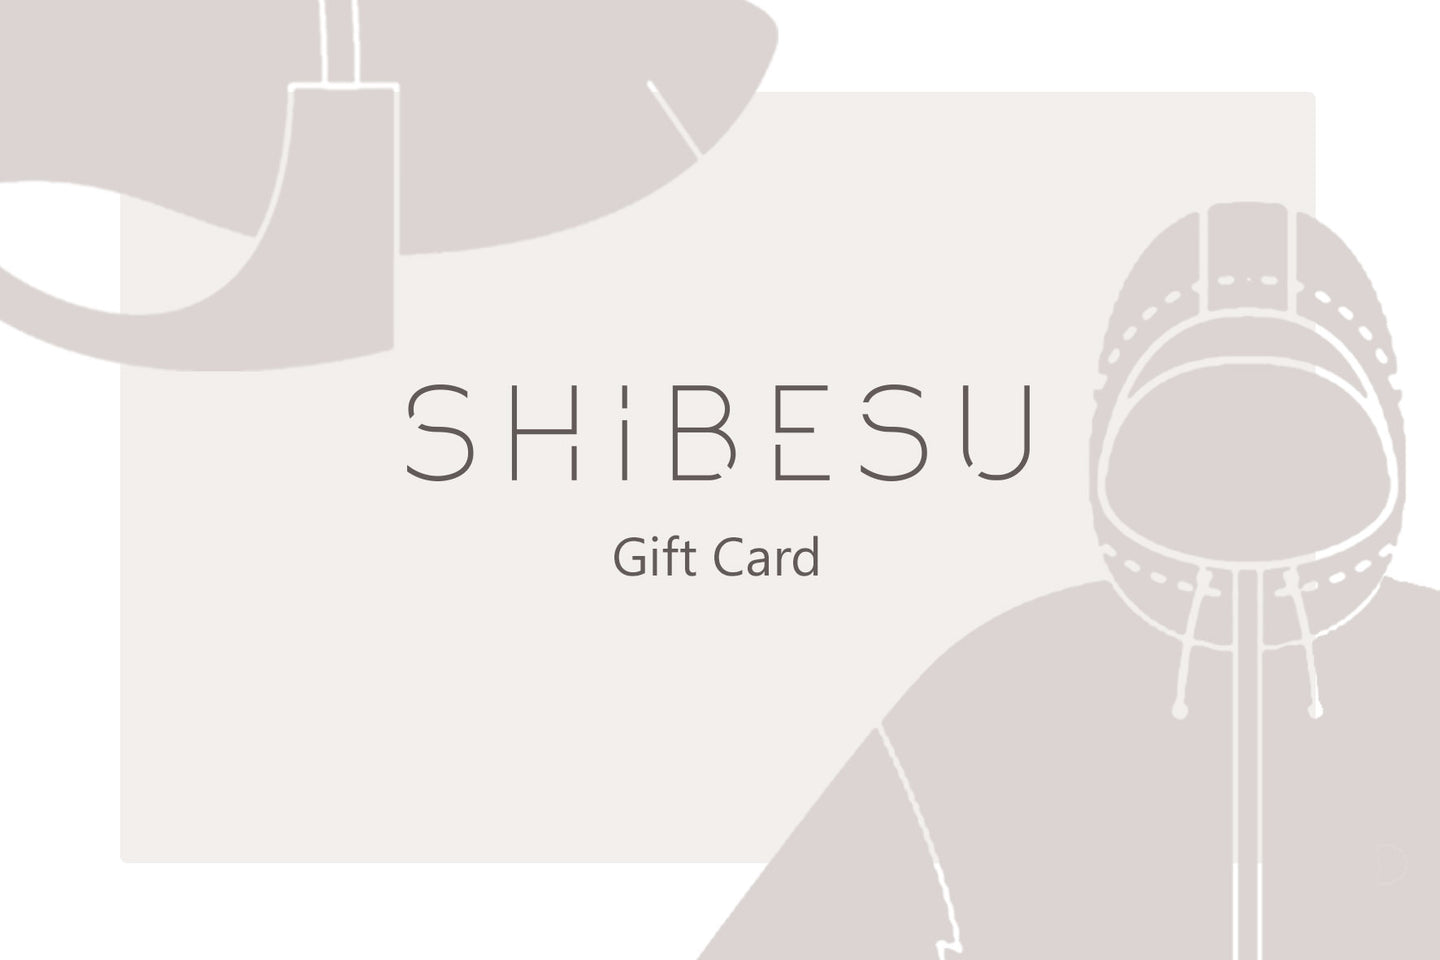 Shibesu Gift Card